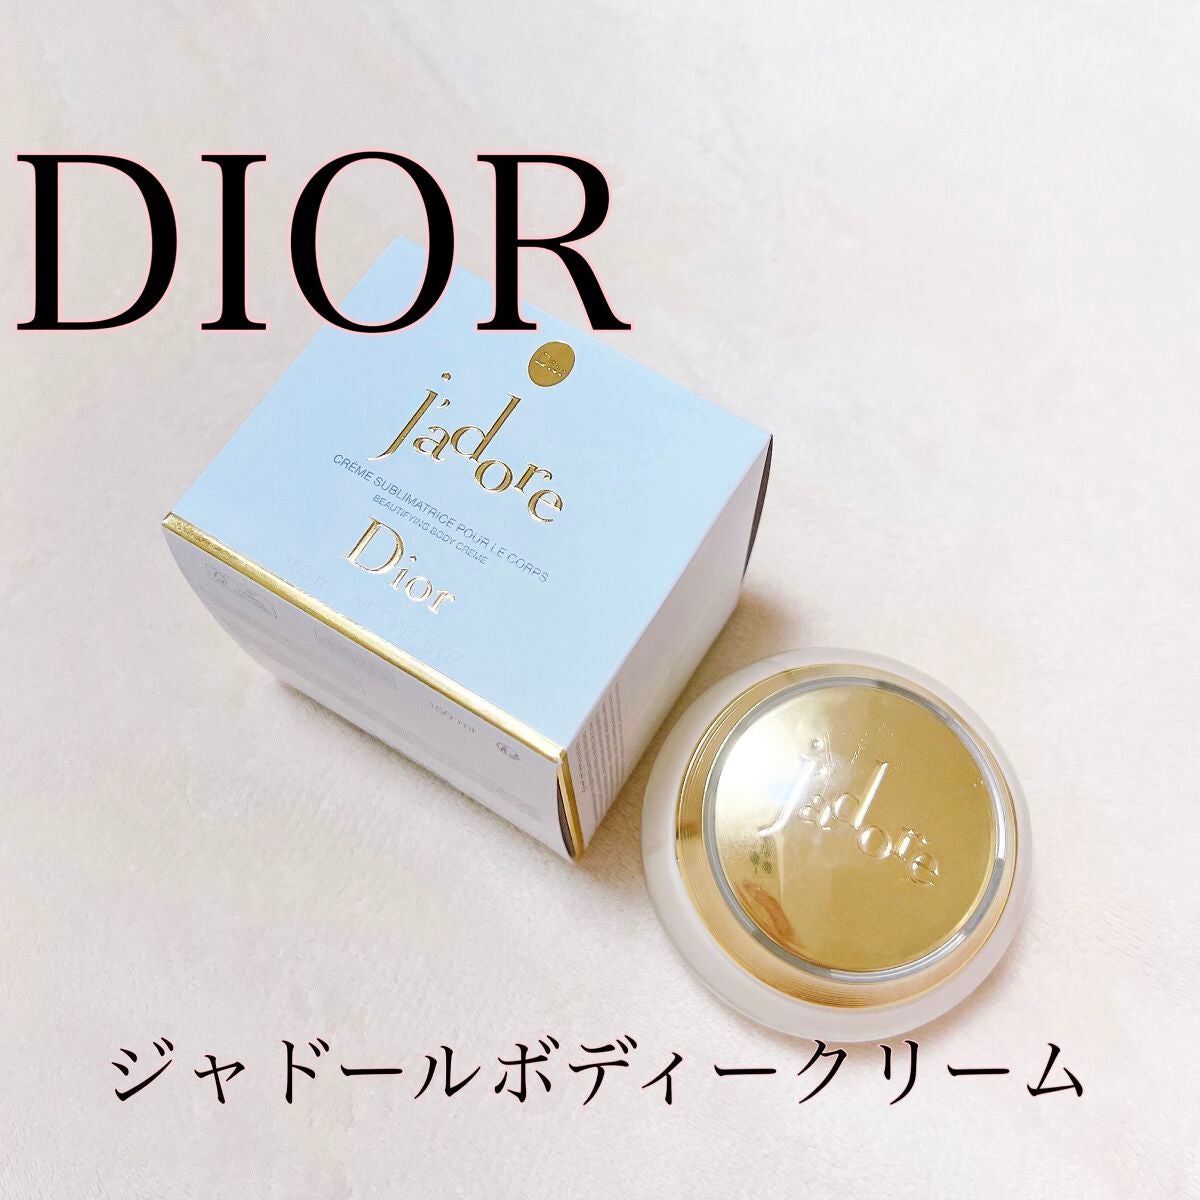 ジャドール jadore ボディークリーム Dior